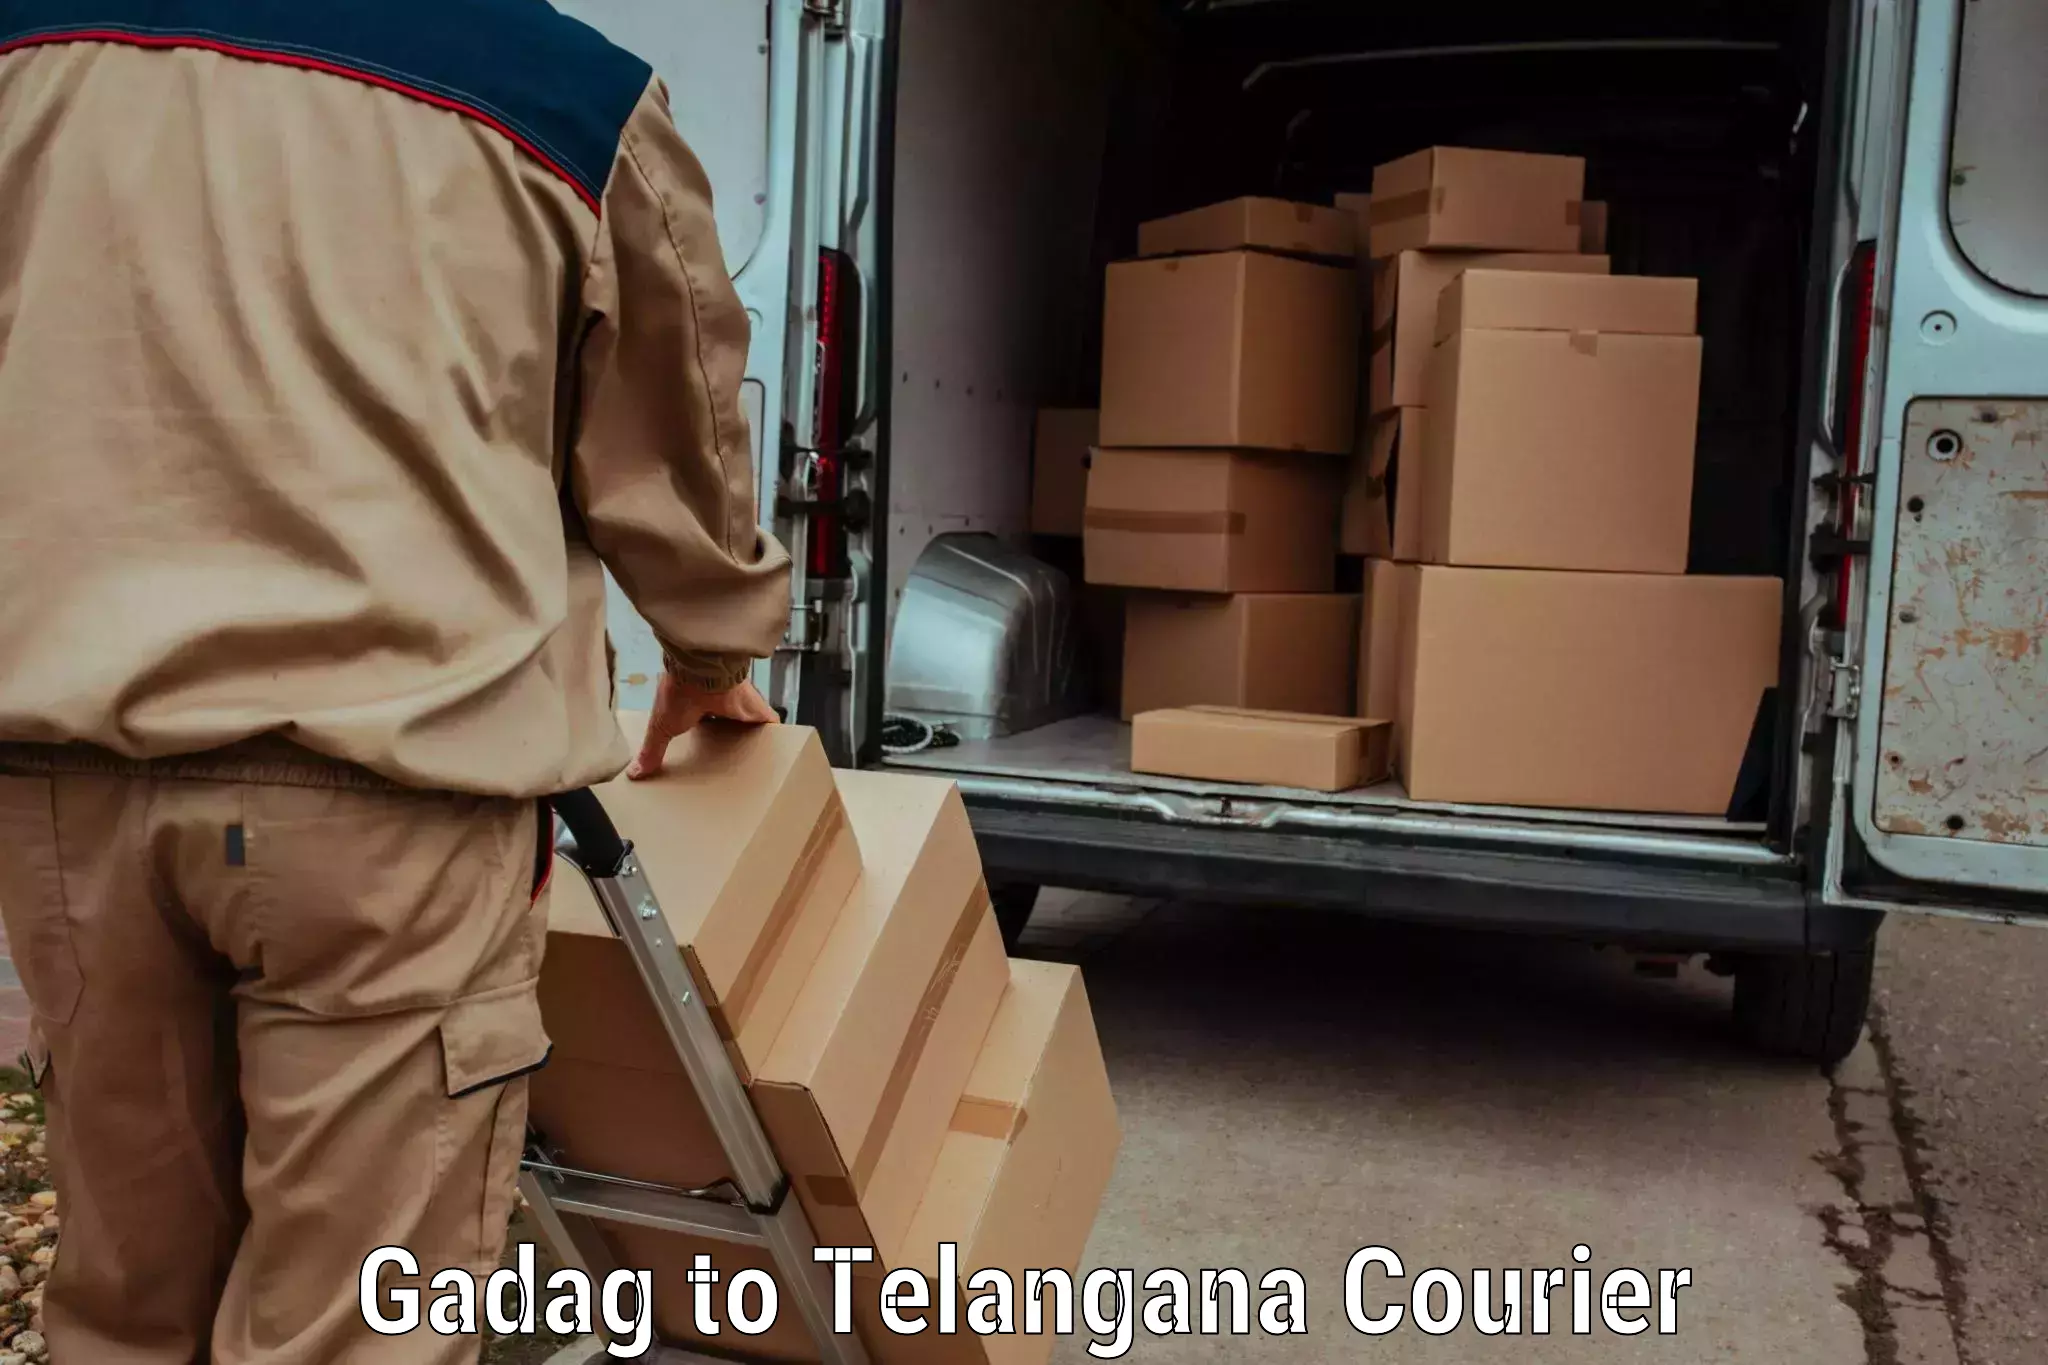 Courier dispatch services in Gadag to Karimnagar